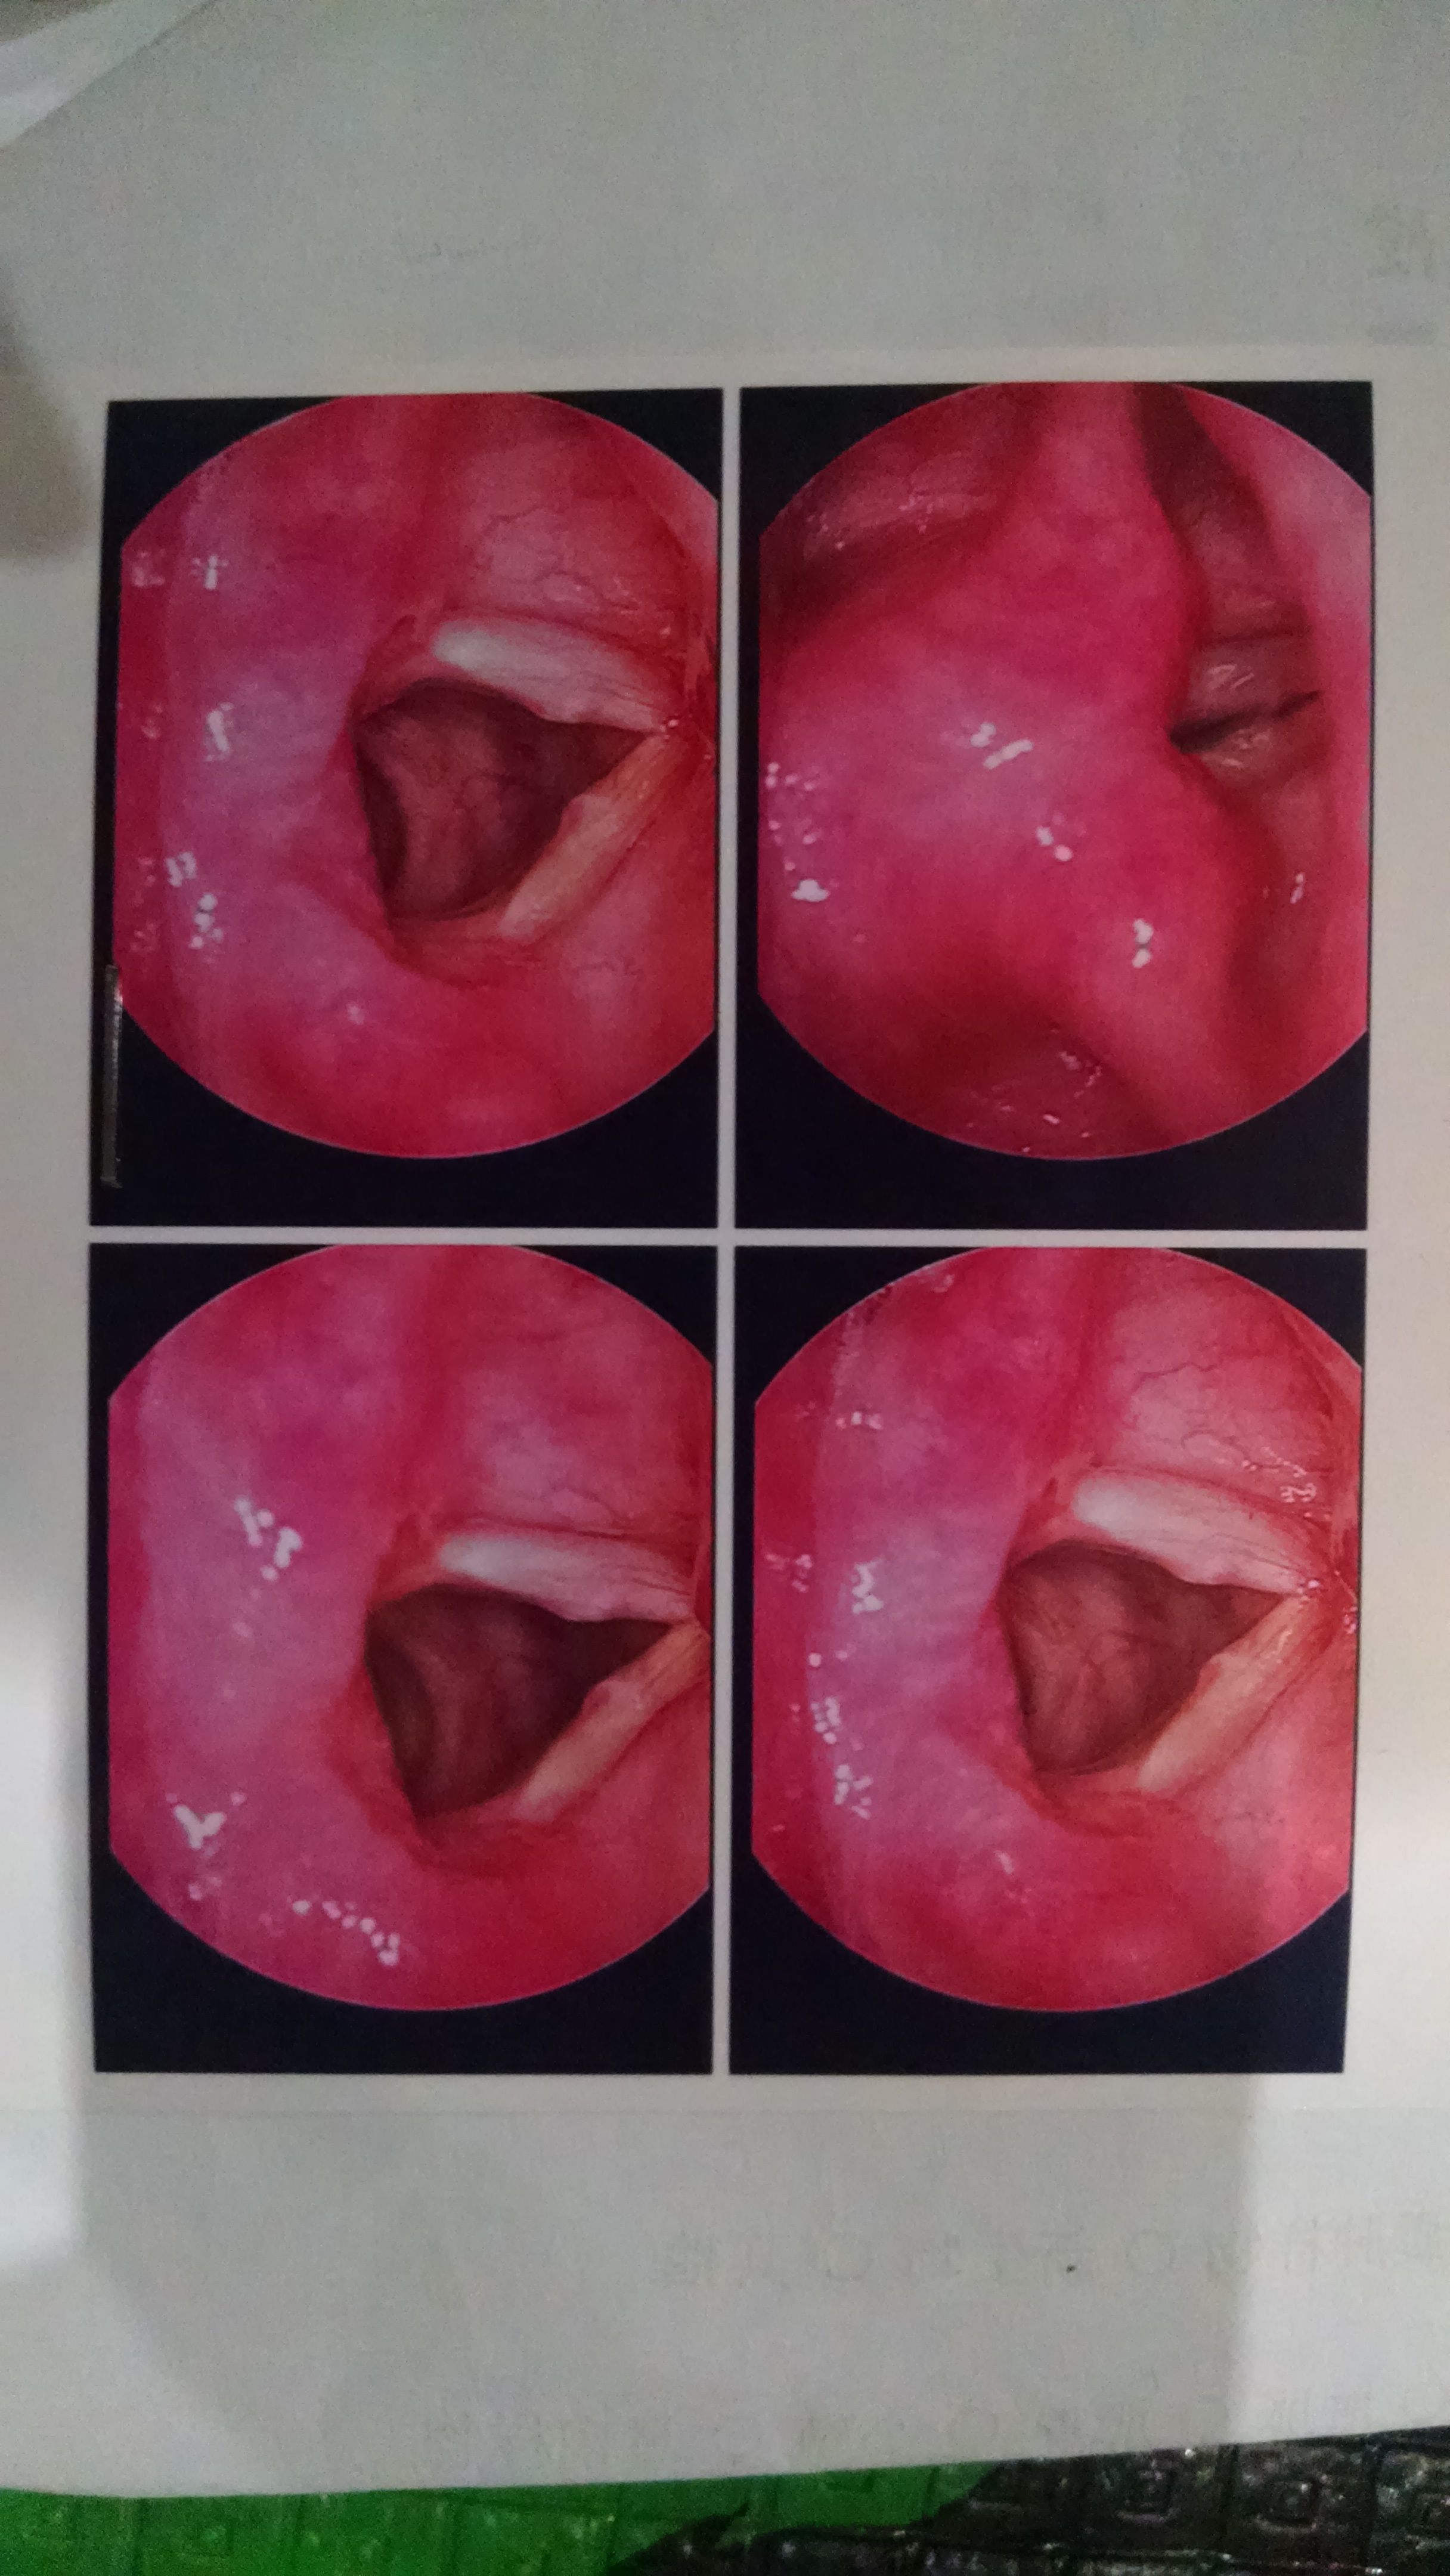 喉咙长息肉的症状图片